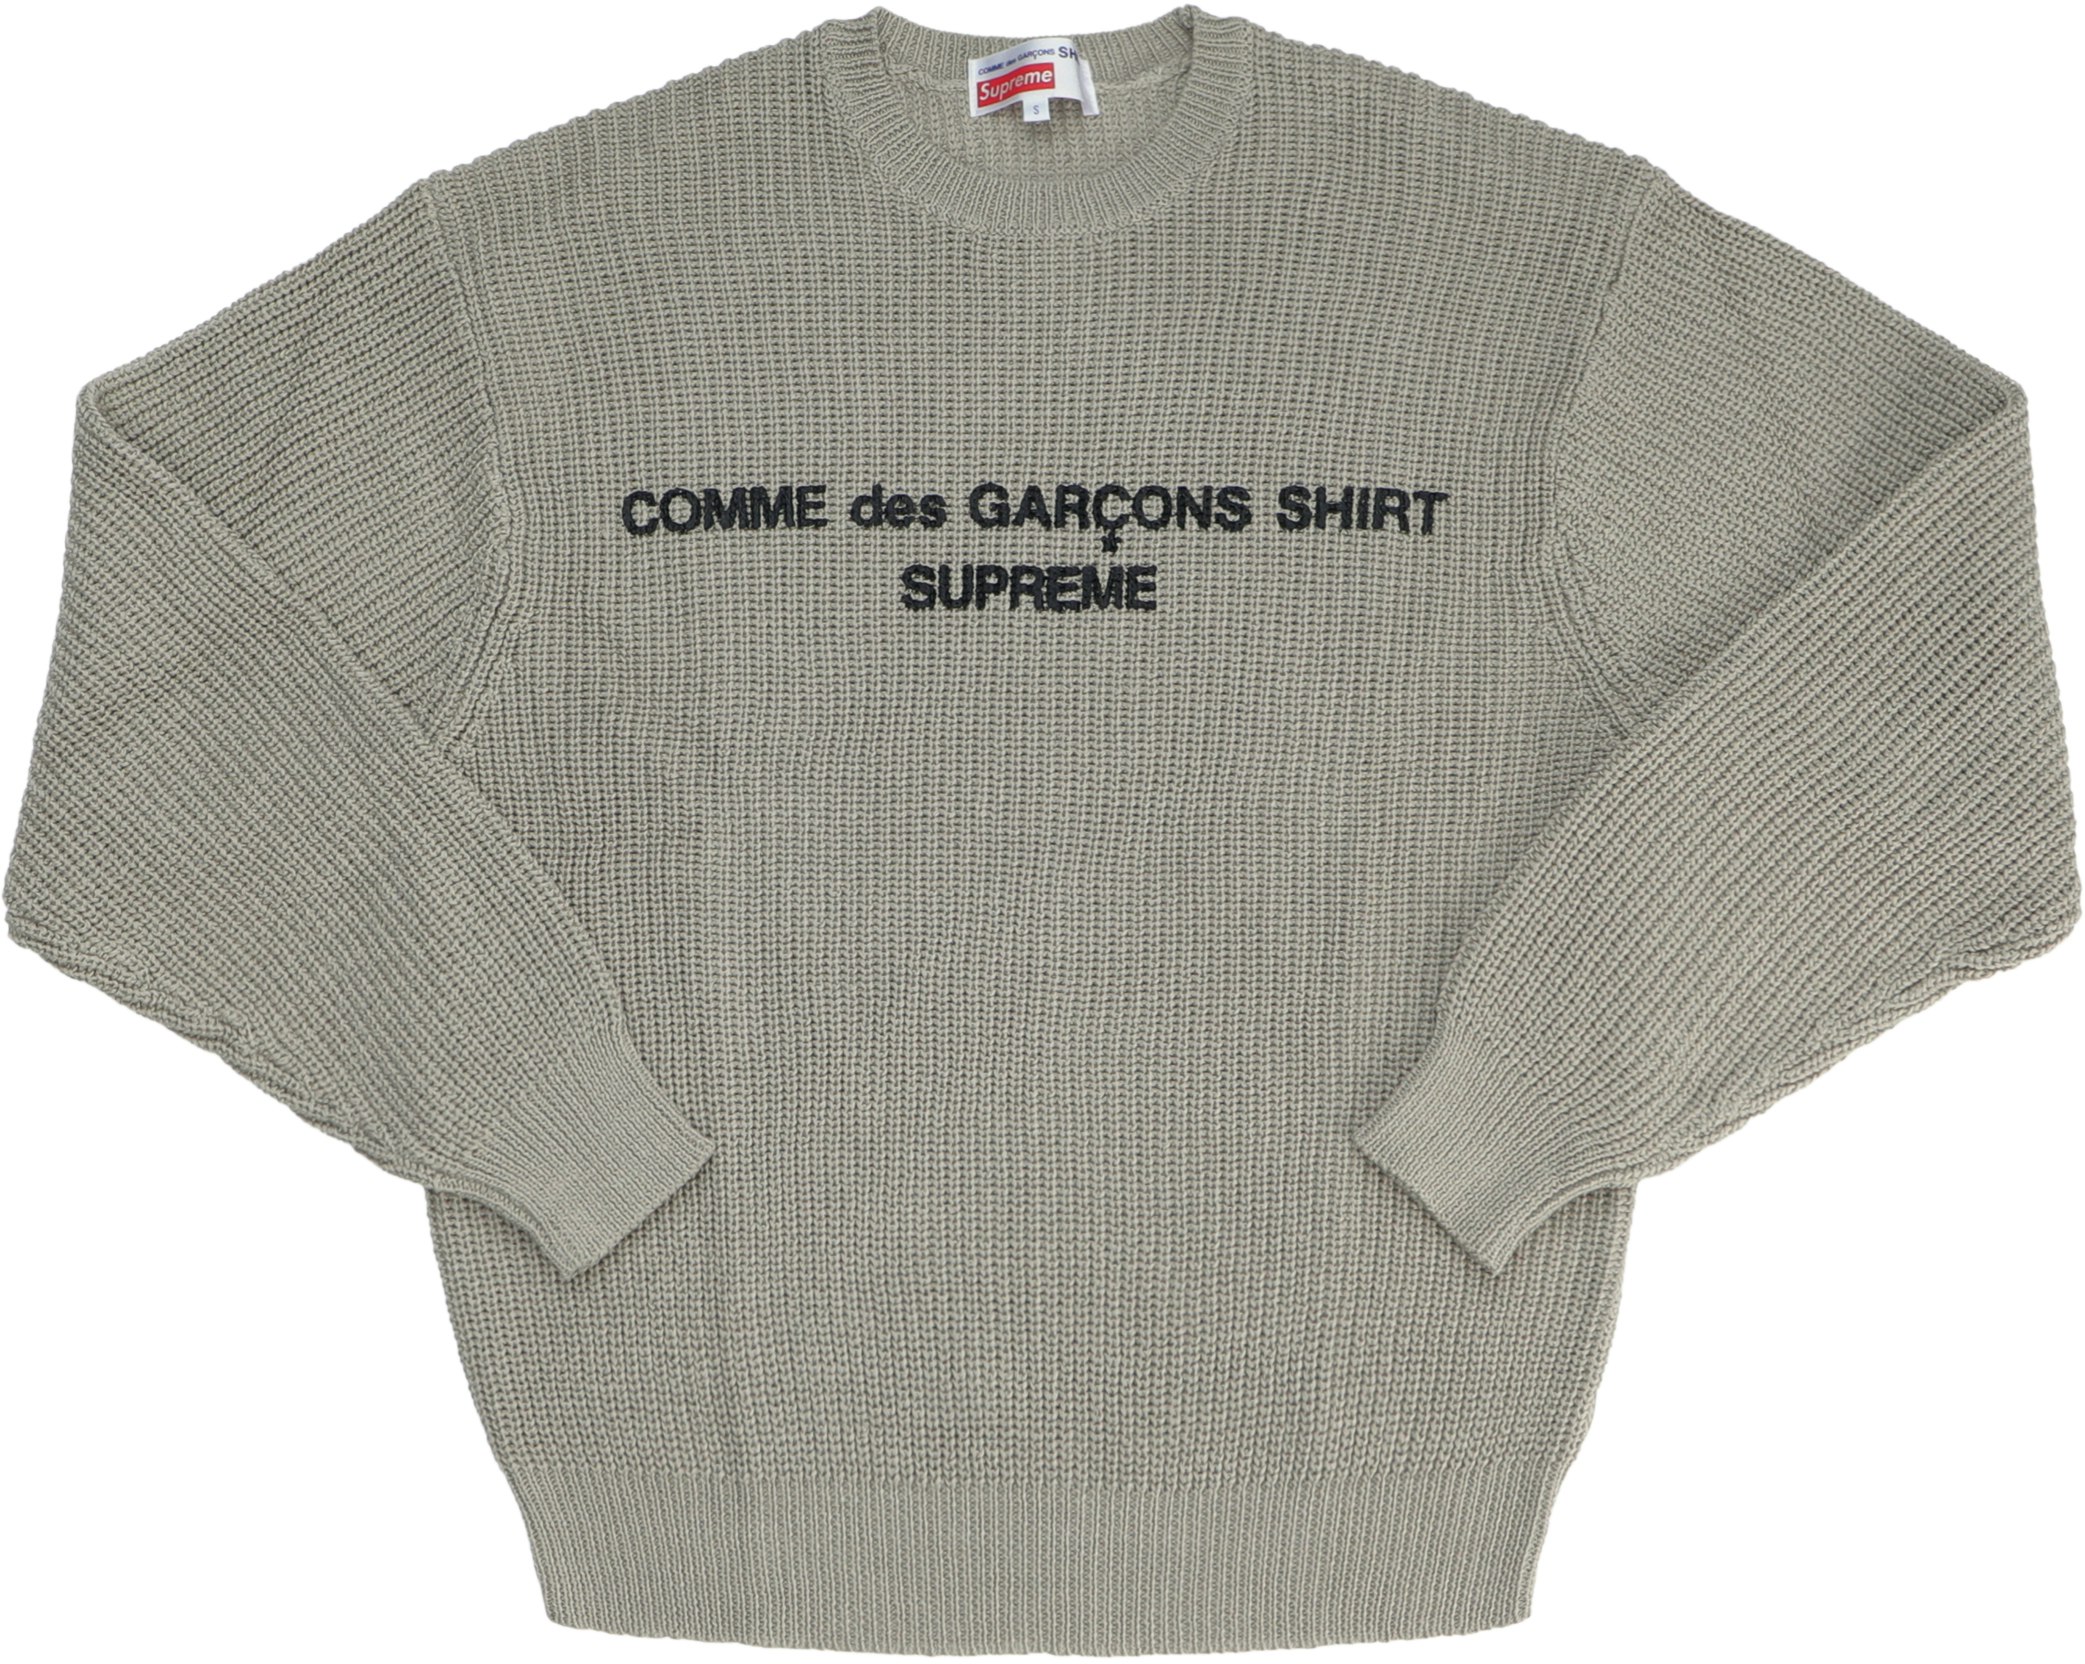 Supreme CDG Comme des Garcons SHIRT Sweater Tan - Novelship